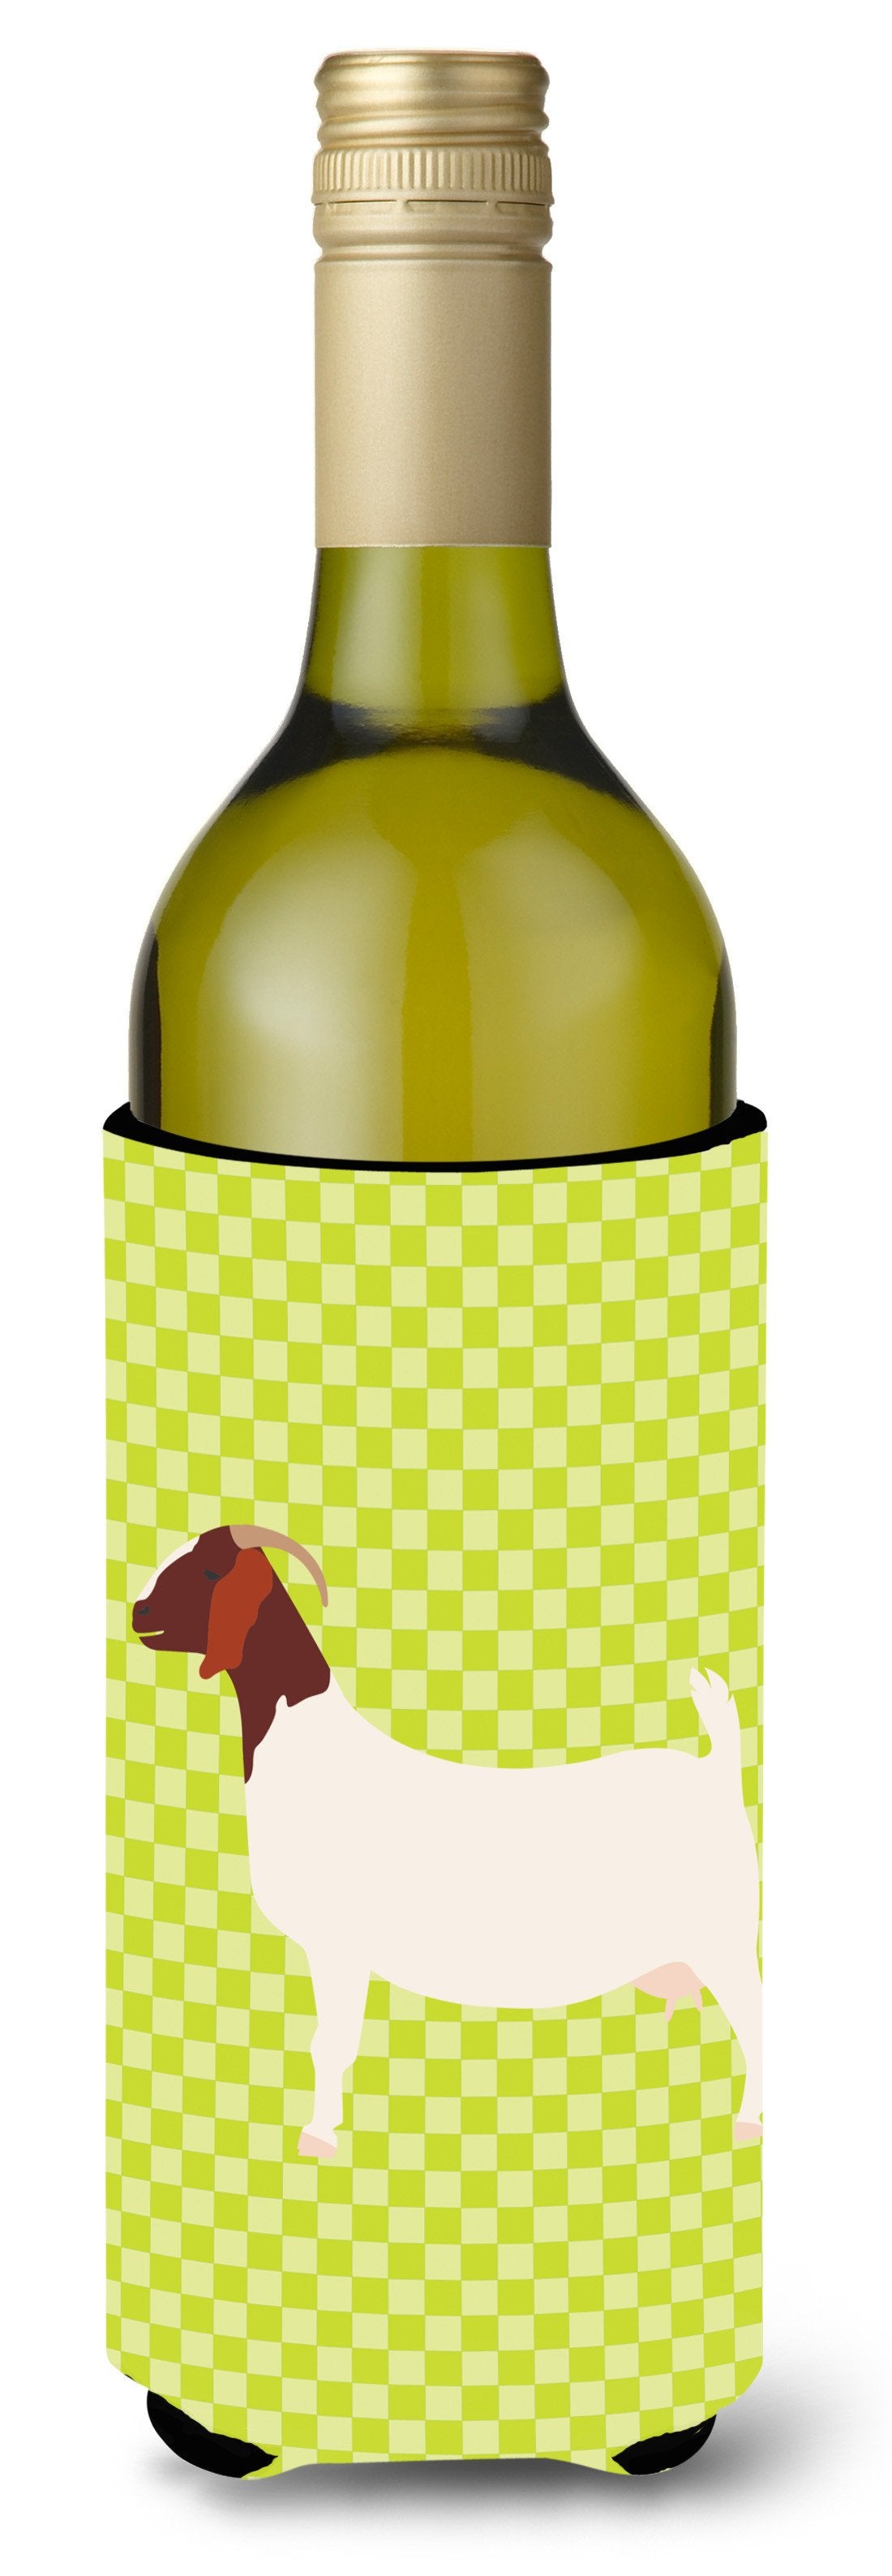 Boer Goat Green Wine Bottle Beverge Insulator Hugger BB7712LITERK by Caroline's Treasures